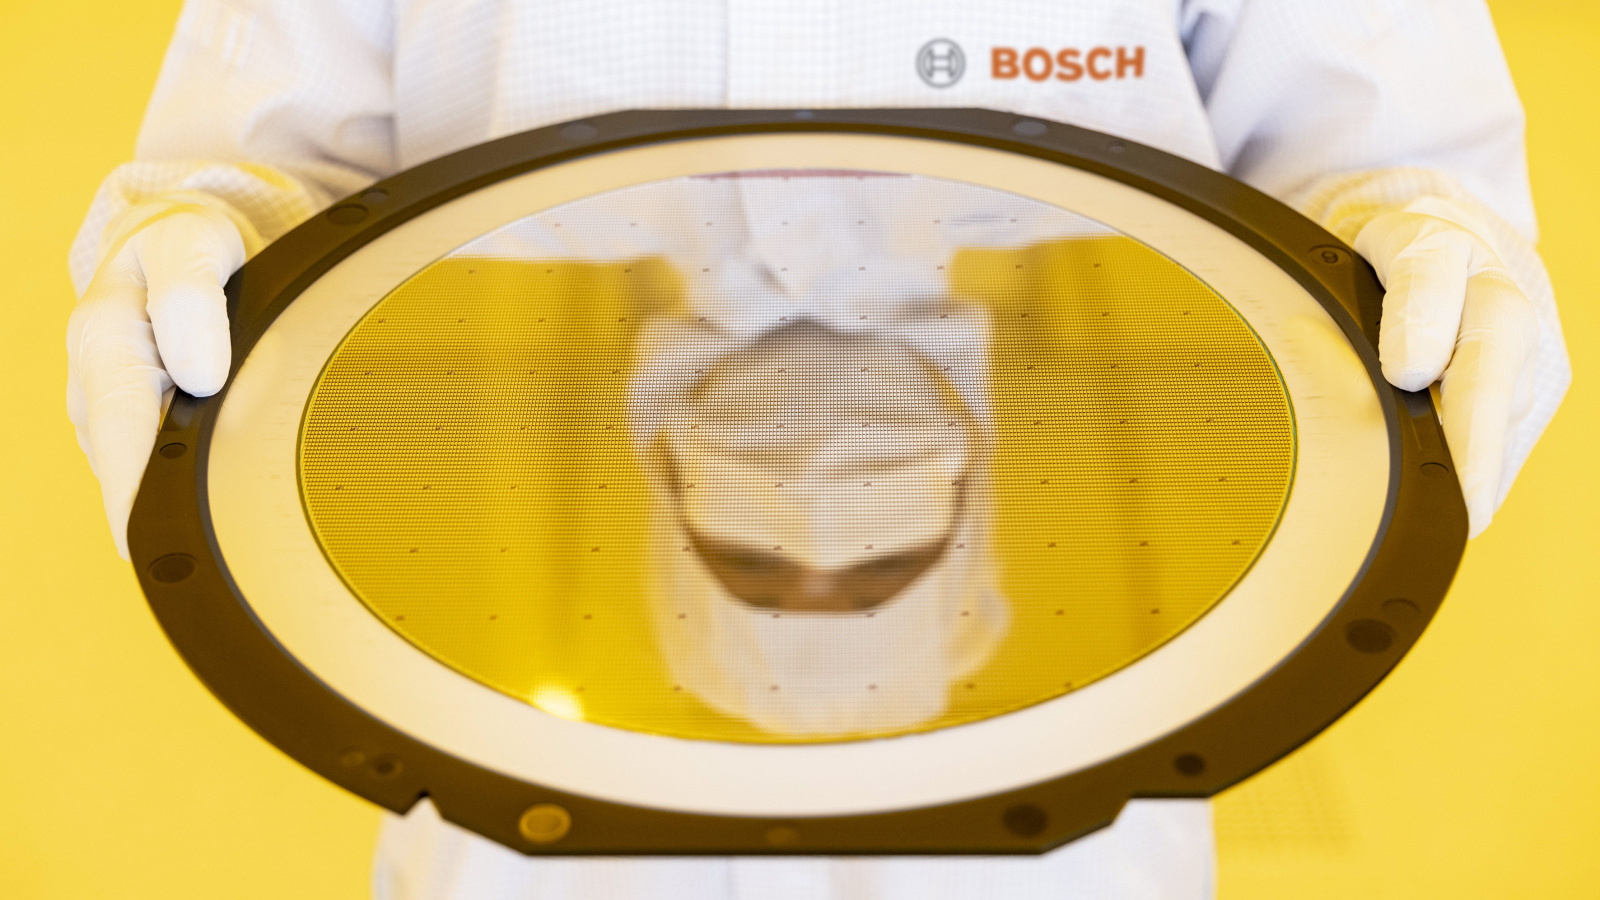 Produção de semicondutores Bosch em Dresden